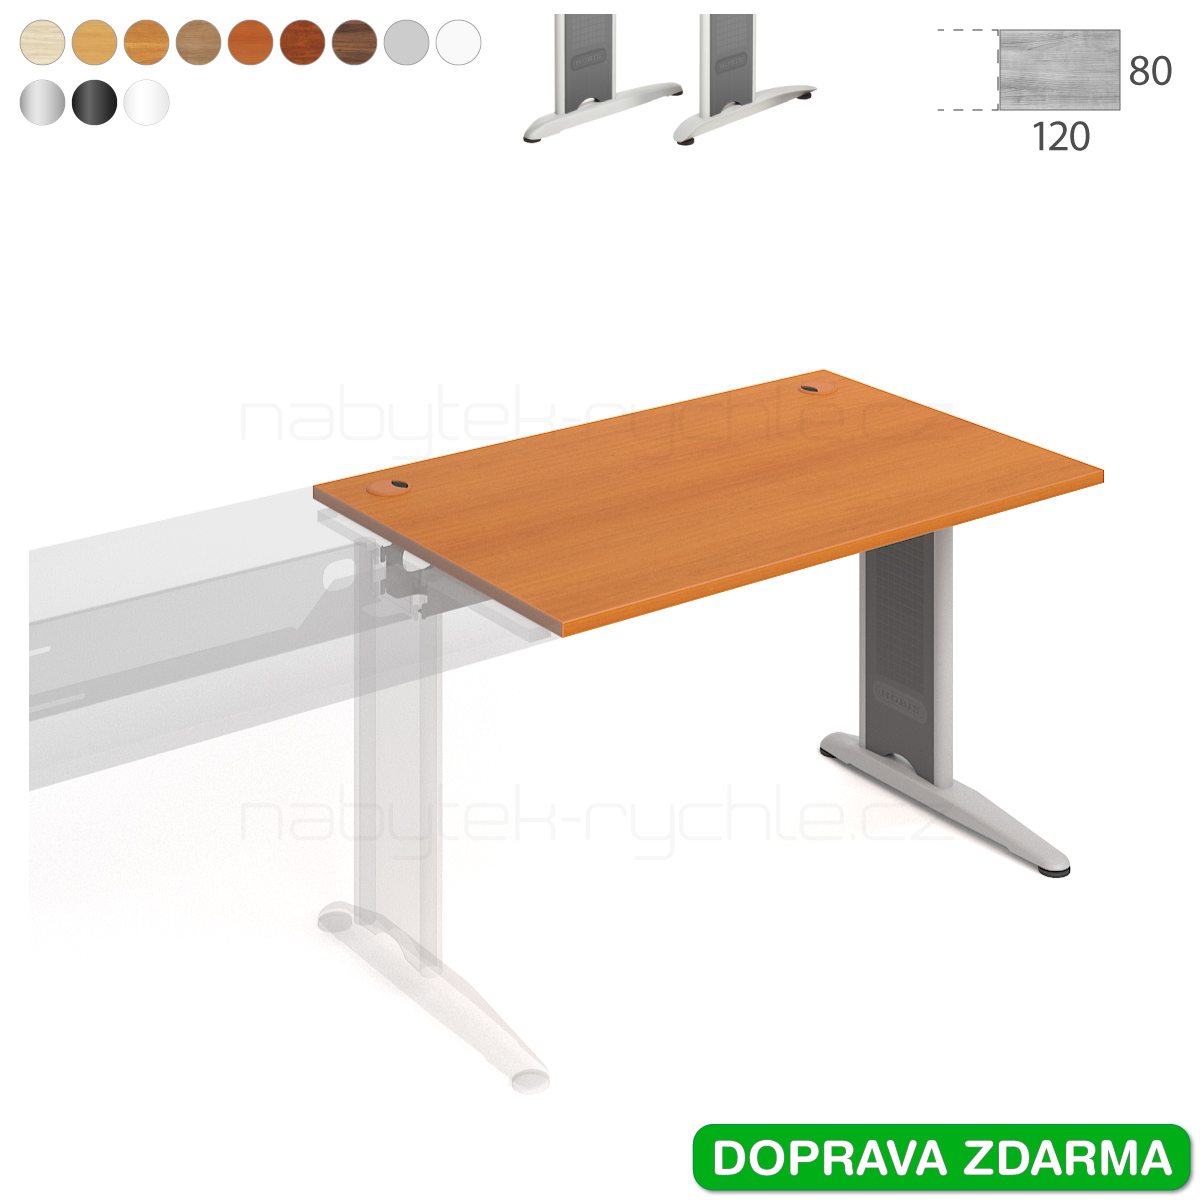 FS 1200 R Hobis Flex - Stůl 120 x 80 navazující